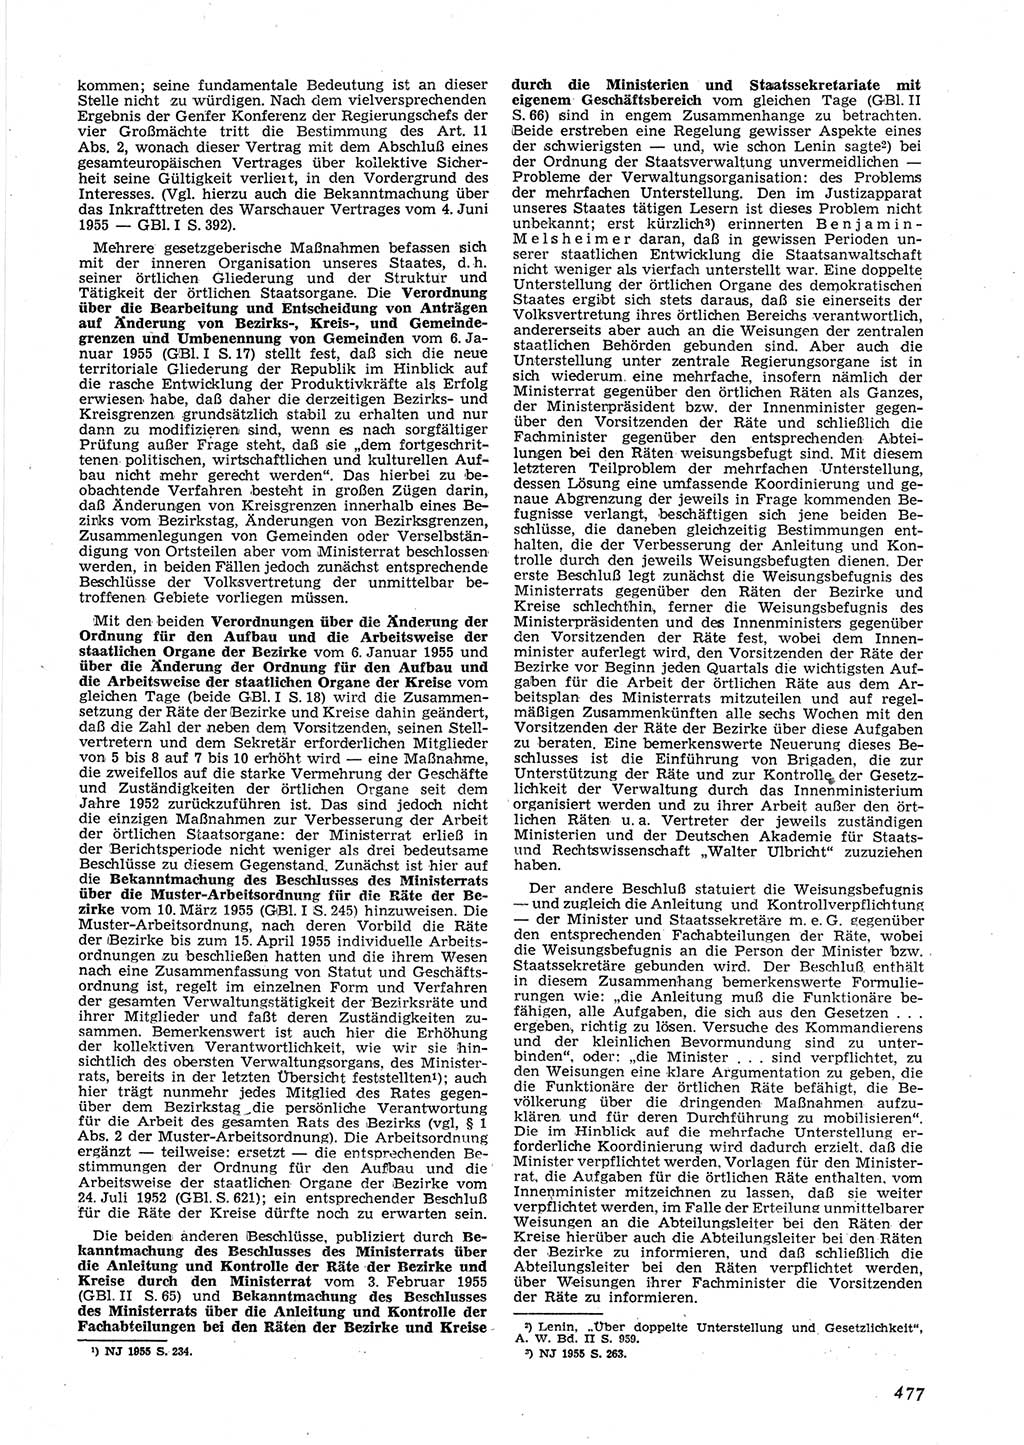 Neue Justiz (NJ), Zeitschrift für Recht und Rechtswissenschaft [Deutsche Demokratische Republik (DDR)], 9. Jahrgang 1955, Seite 477 (NJ DDR 1955, S. 477)